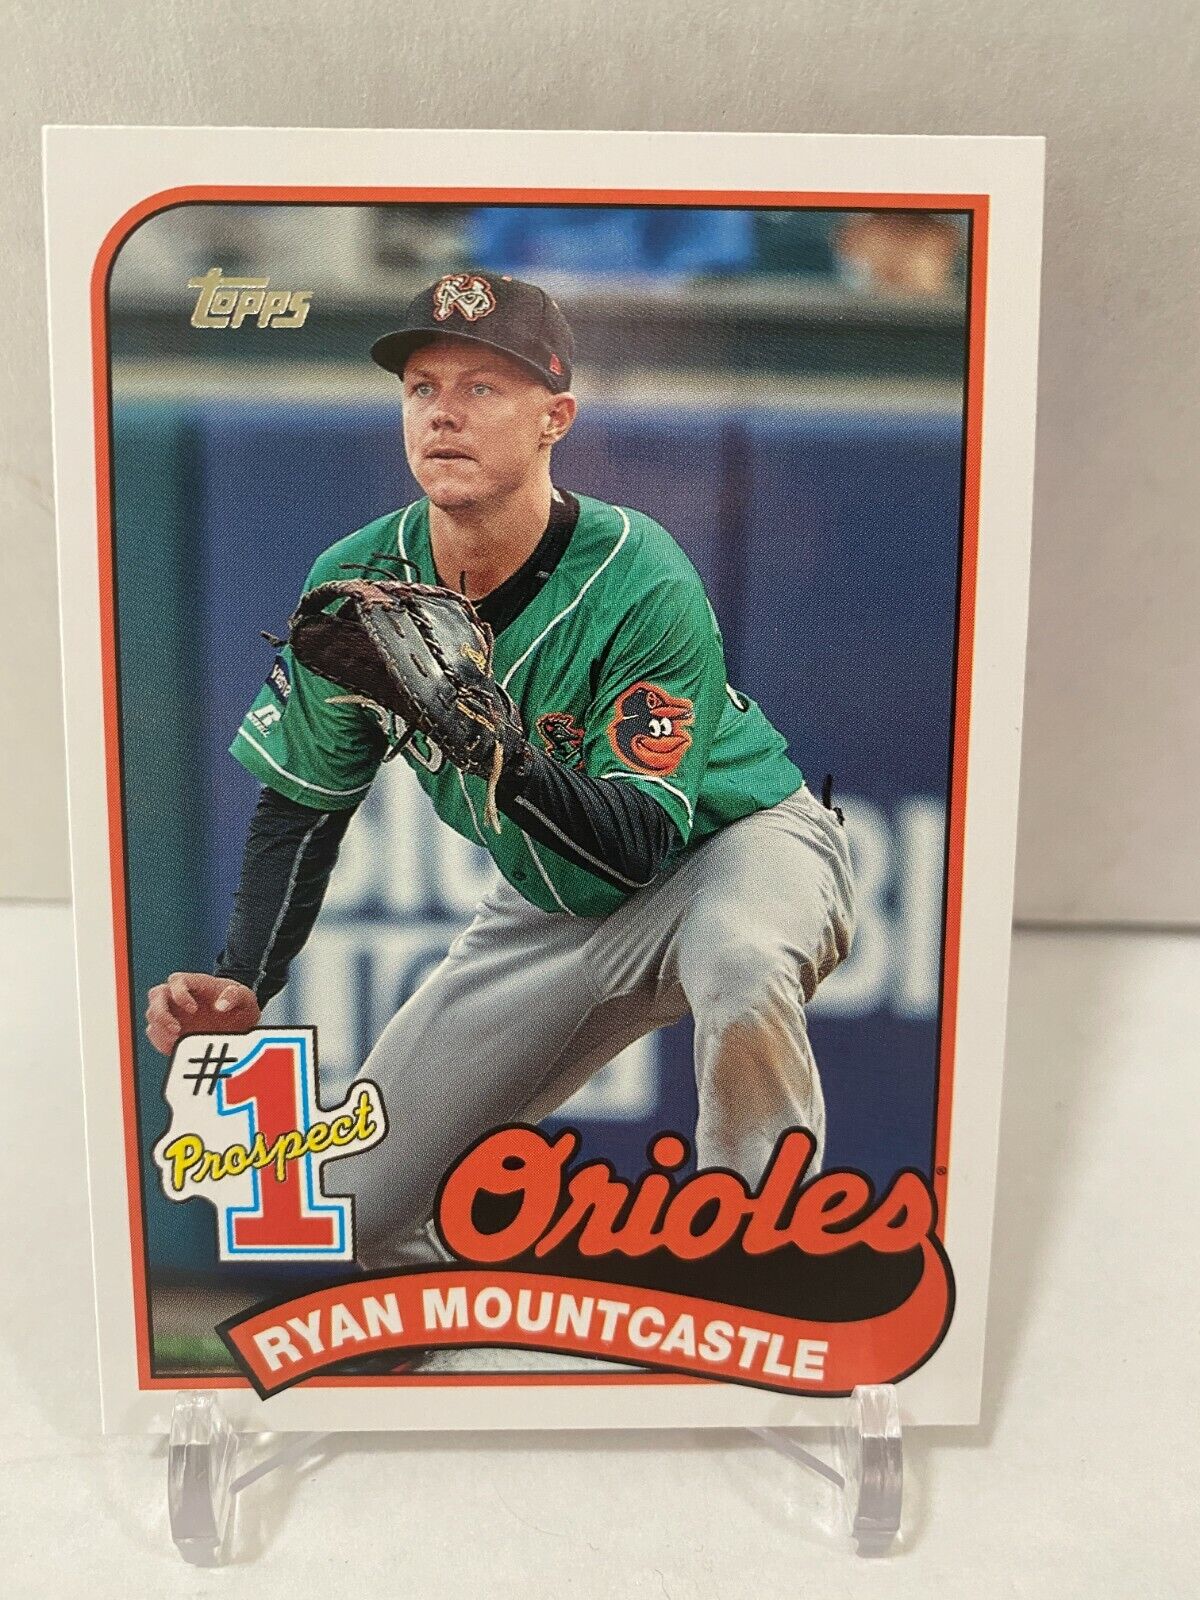 Topps 2020 Update Baseball Card #P-15 Ryan Mountcastle #1 Prospect Insert MINT